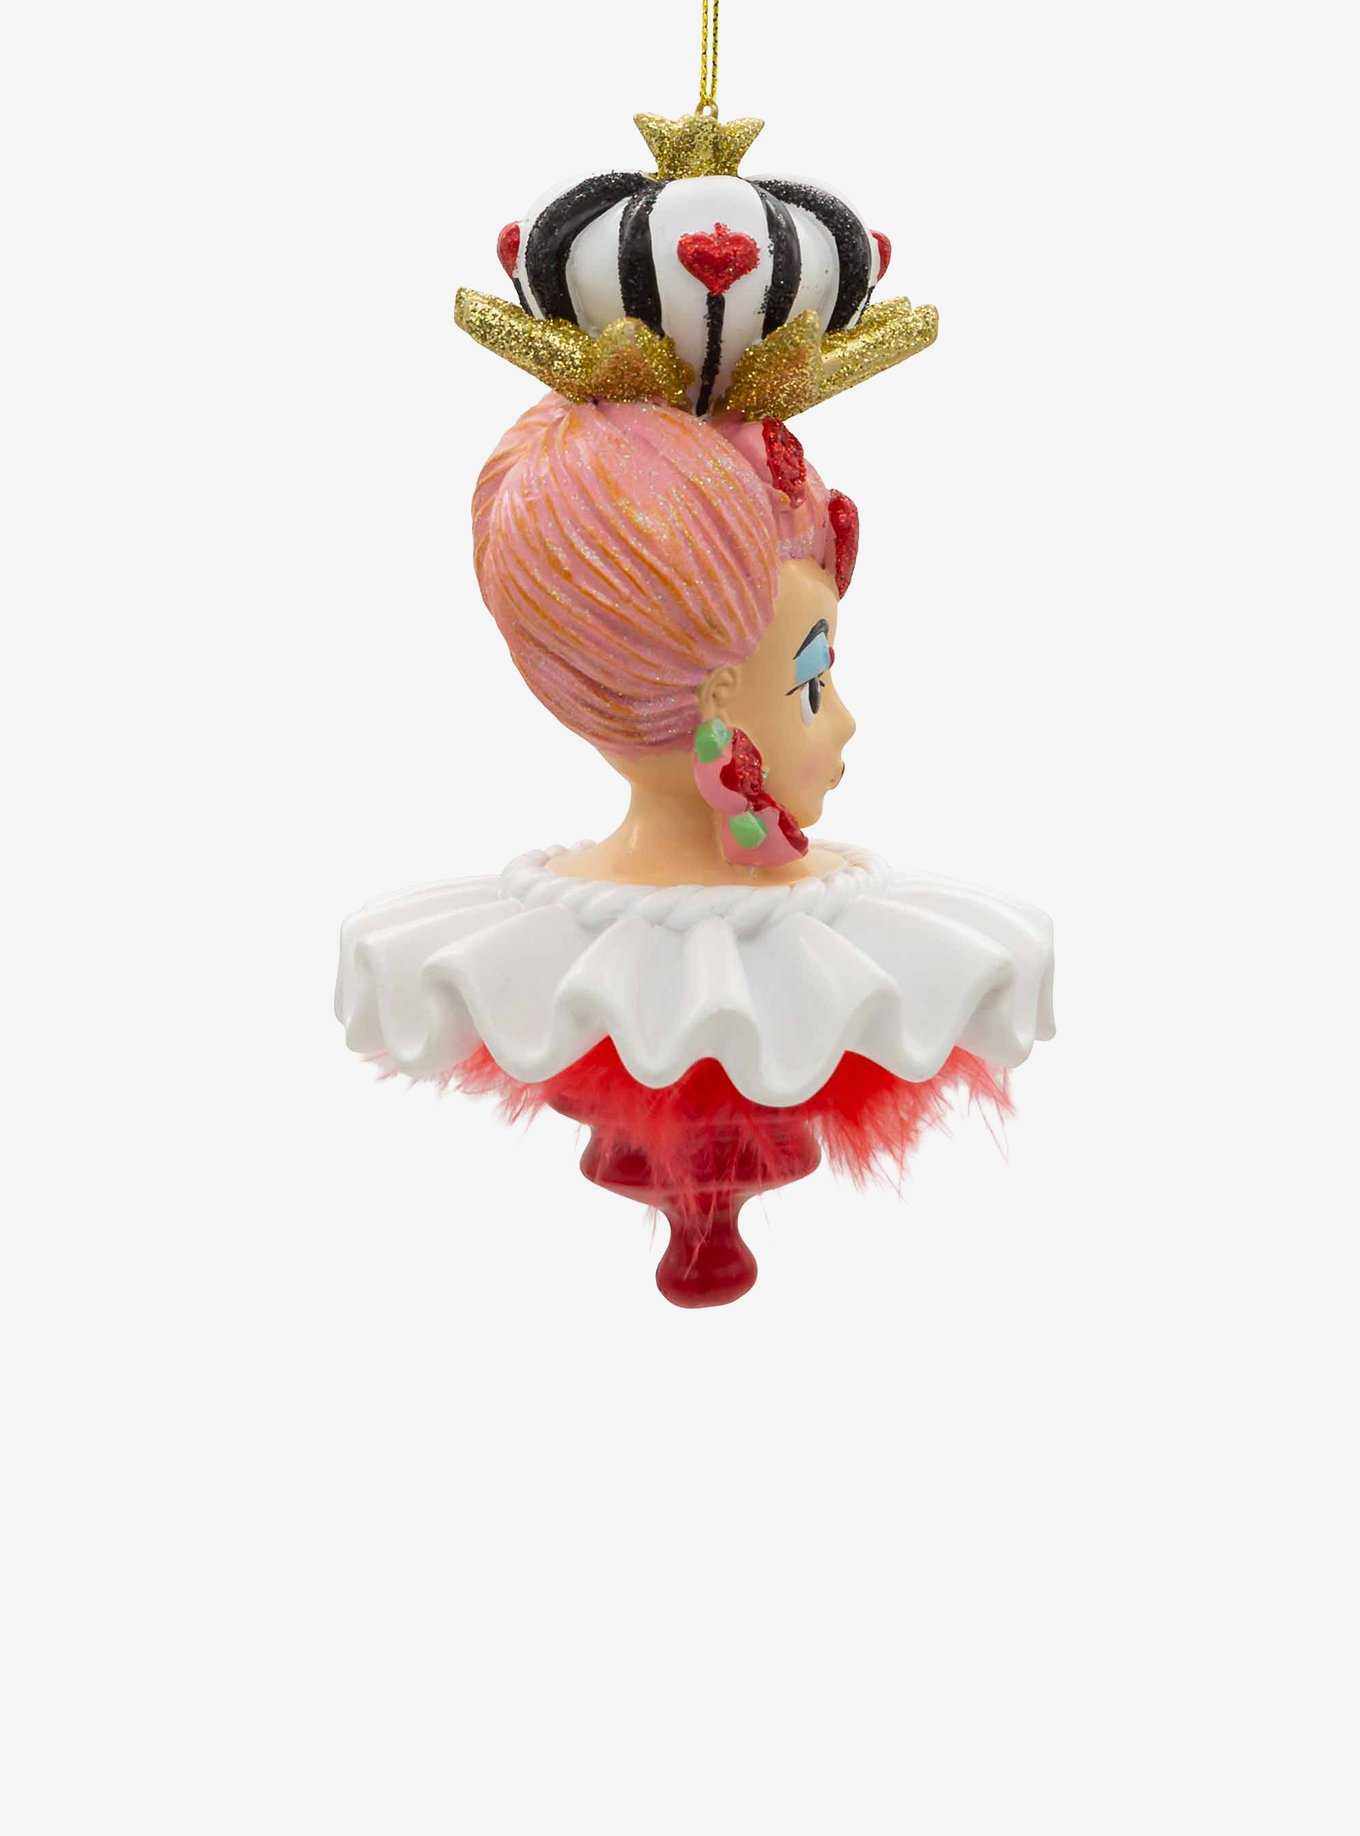 Disney Alice in Wonderland Queen of Hearts Ornament, , hi-res